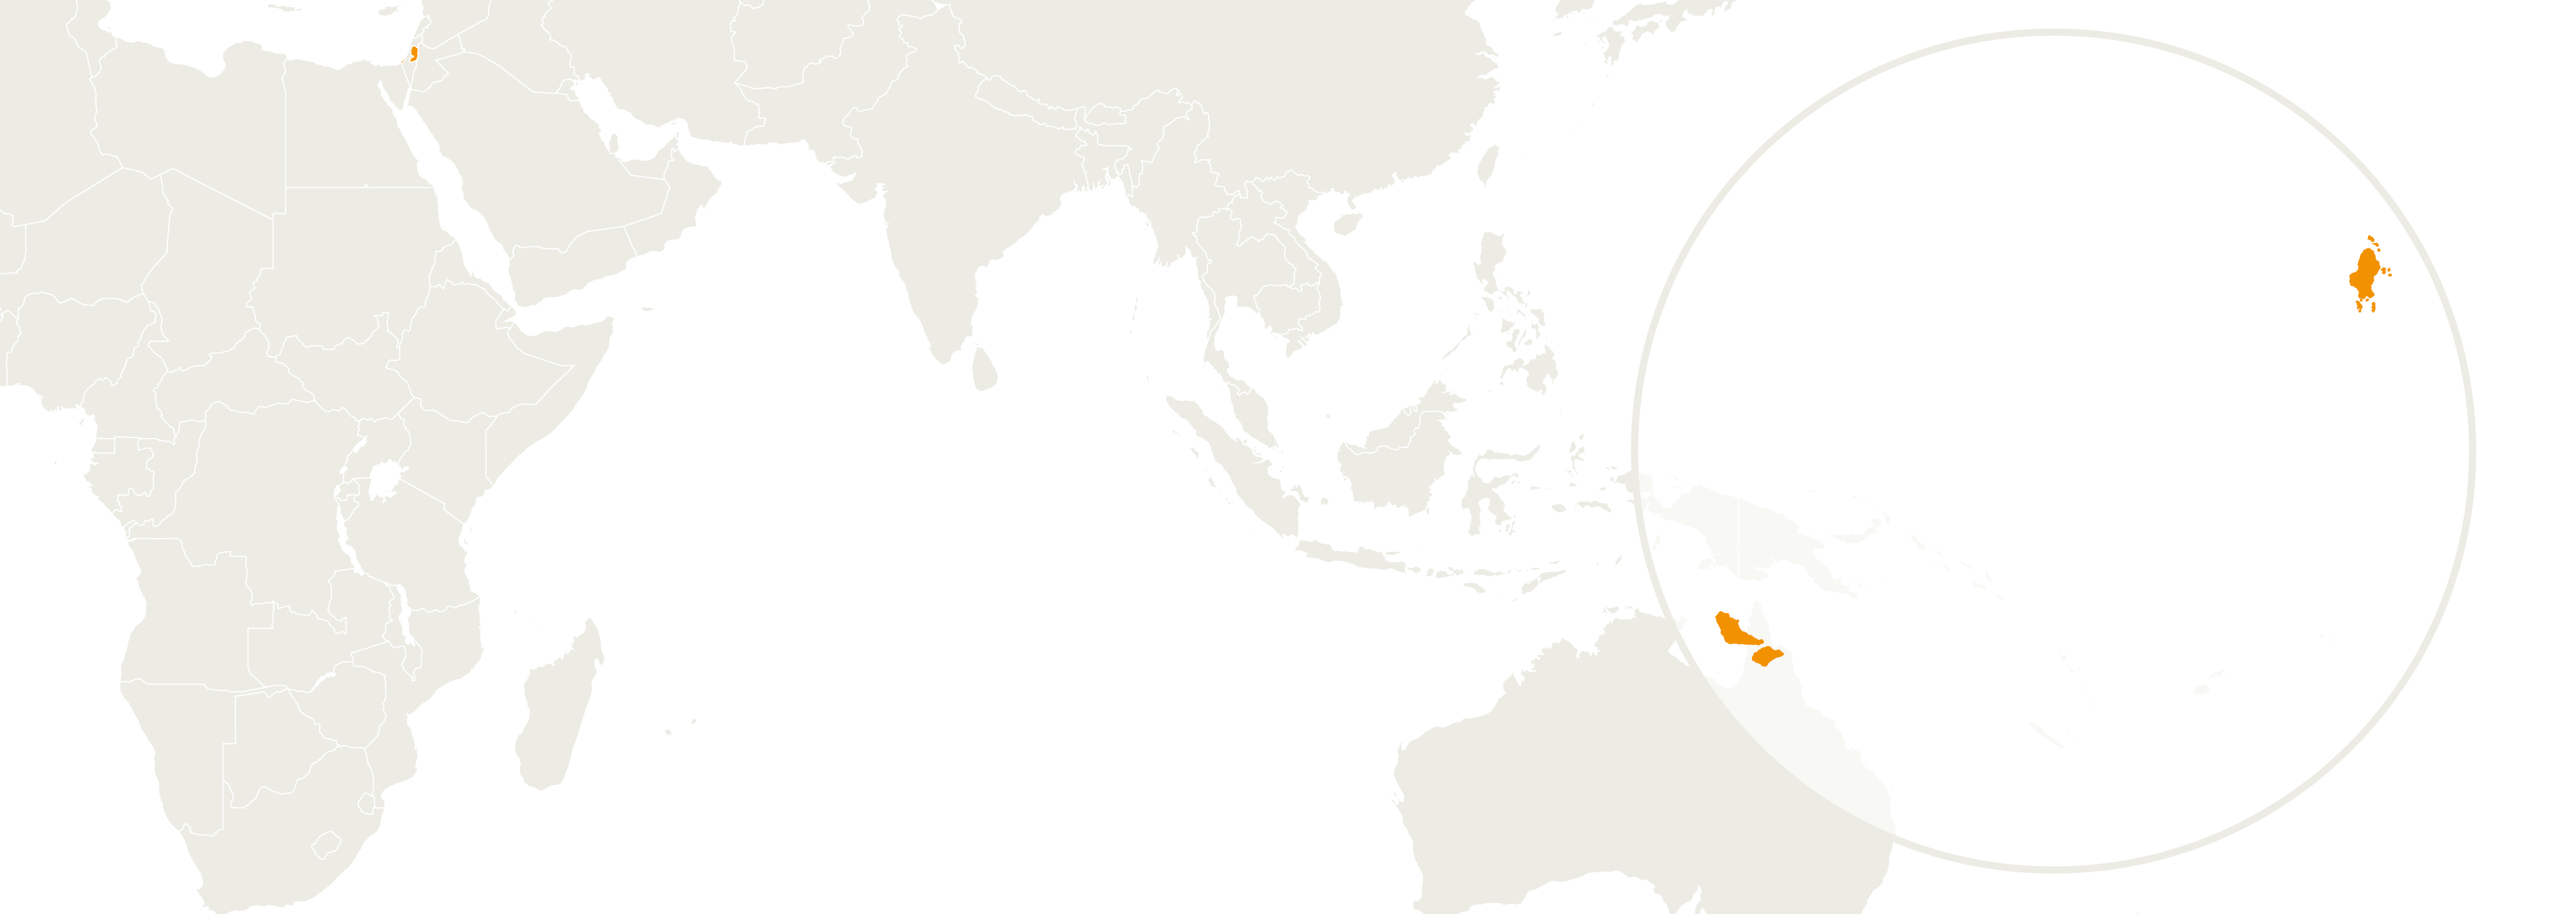 Map of Islas Wallis y Futuna